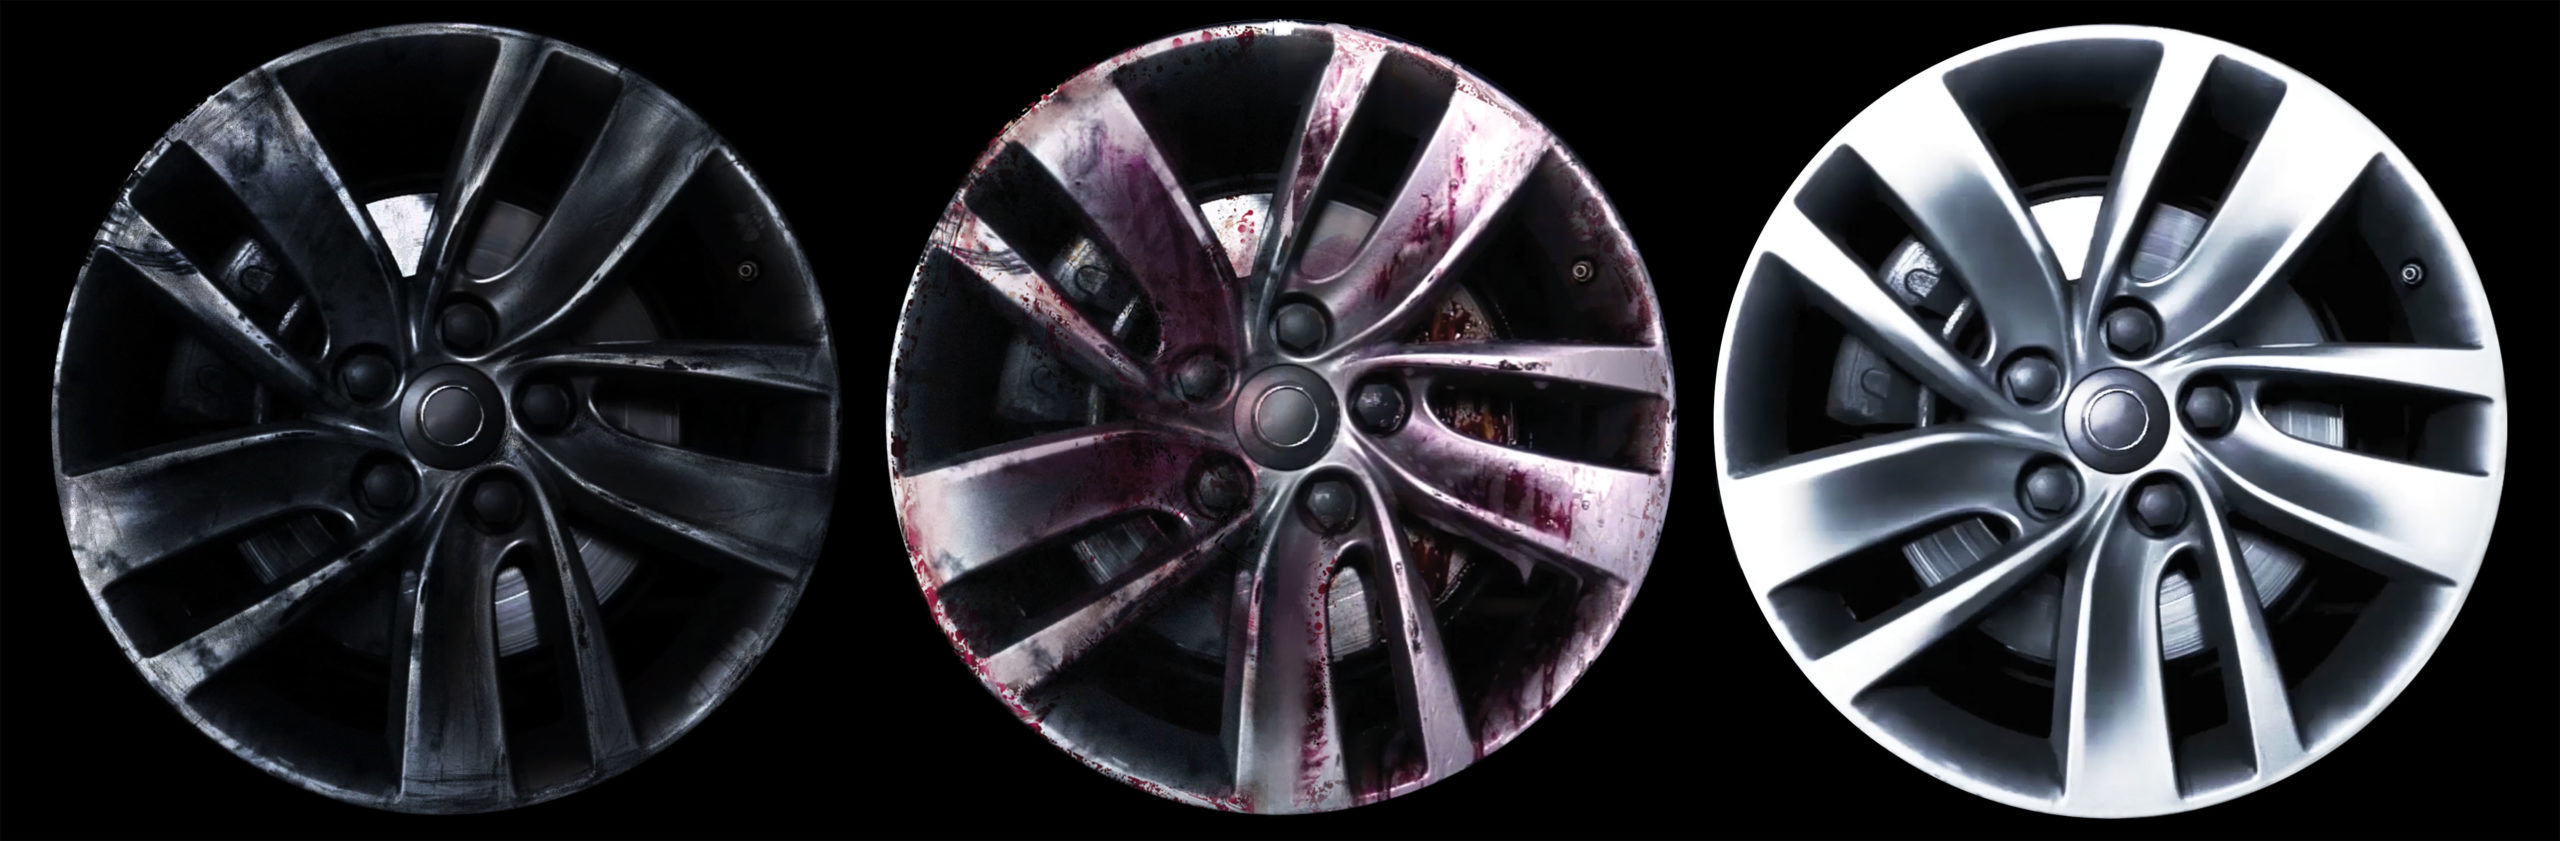 W42403, Очиститель колёсных дисков 500 мл,
Очиститель колёсных дисков 500 мл
Инновационная формула для очистки всех типов колёс с эксклюзивными эффектами NON-DRIP и COLOR CHANGE. Обеспечивает удаление любой грязи, скопившейся на поверхности колес.
Продукт на водной основе с эксклюзивными эффектами NON-DRIP и COLOR CHANGE.
Эффект NON-DRIP позволяет продукту оставаться в контакте с поверхностью колеса в течение более длительного времени, улучшая очищающее действие.
Эффект COLOR CHANGE показывает эффективность, меняя цвет колеса на красный по мере того, как растворяется грязь.
Легко использовать: нанесите, дождитесь изменения цвета и с легкостью удалите грязь.
ВНИМАНИЕ: при первом использовании сначала опробуйте на невидимой части.Распылите средство прямо на поверхность диска и оставьте на 2-3 минуты, пока он не станет красным. Смойте с помощью мойки высокого давления или из шланга. При необходимости очистите поверхность колеса щеткой от въевшейся грязи. После процедуры на поверхности диска и суппорта могут появиться тёмные пятна. Они исчезнут после того, как вы проедете несколько сотен метров.